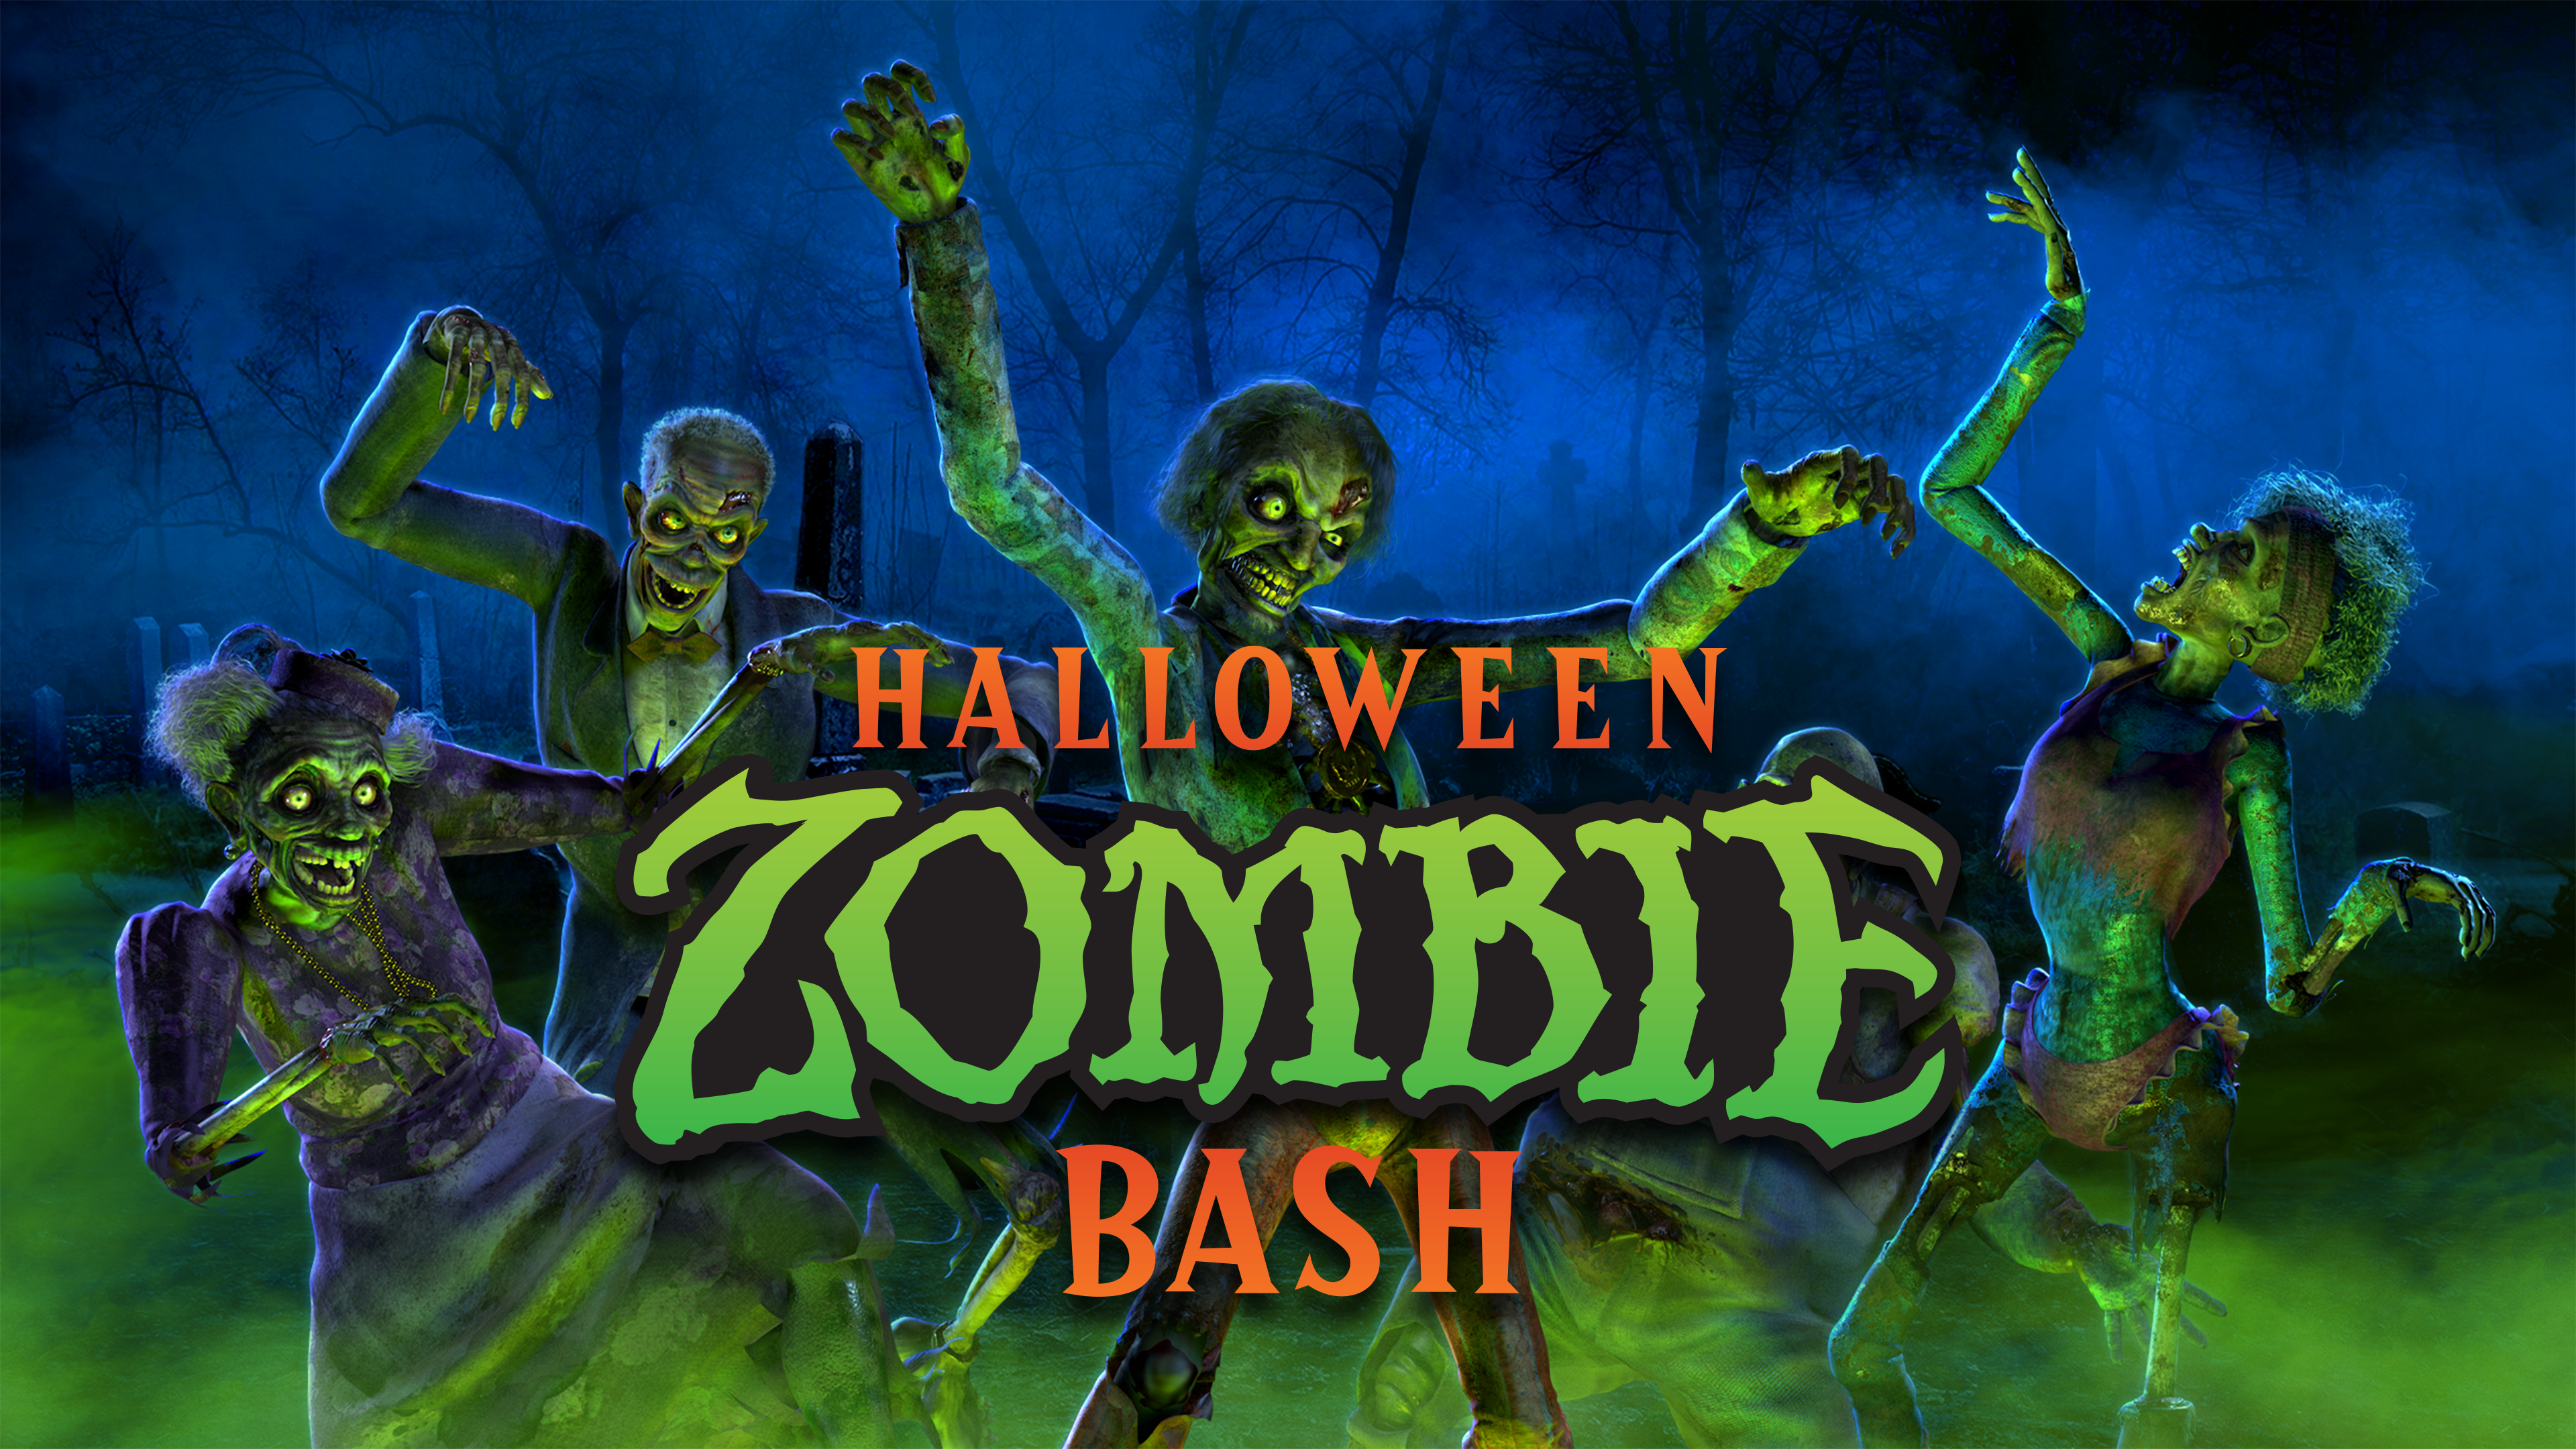 Halloween Zombie Bash Atmos Fx 株式会社アーキサイト